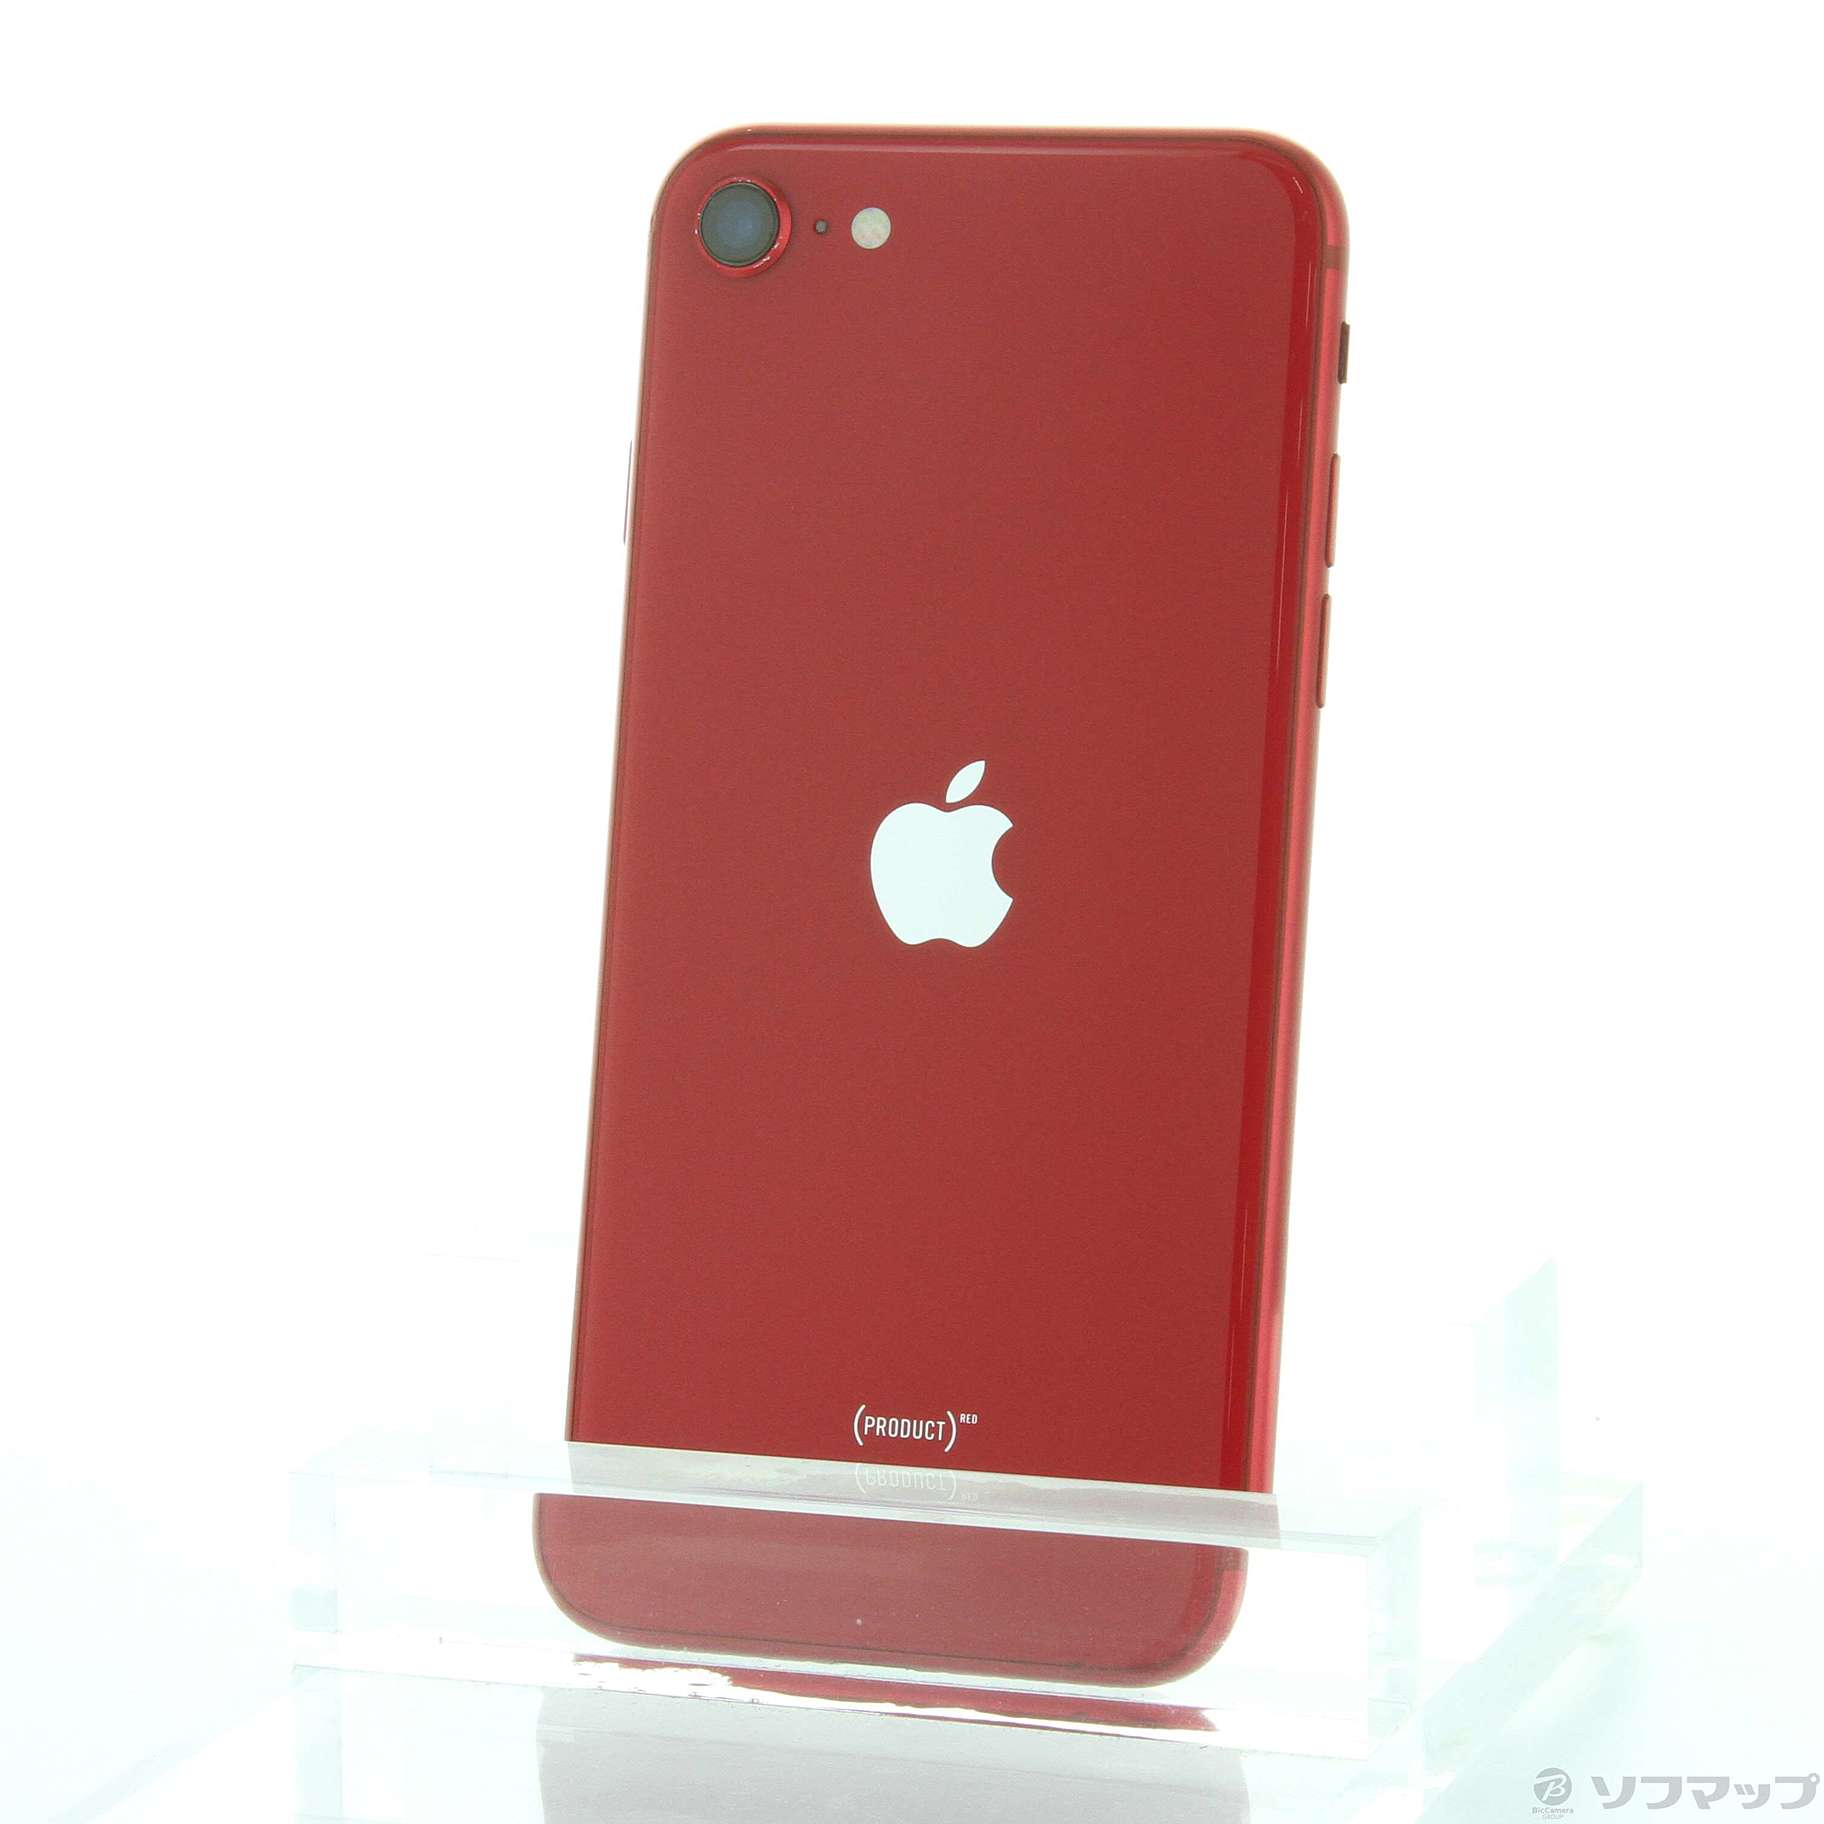 新品未使用 iPhone SE 第2世代 128GB RED SIMフリー  赤